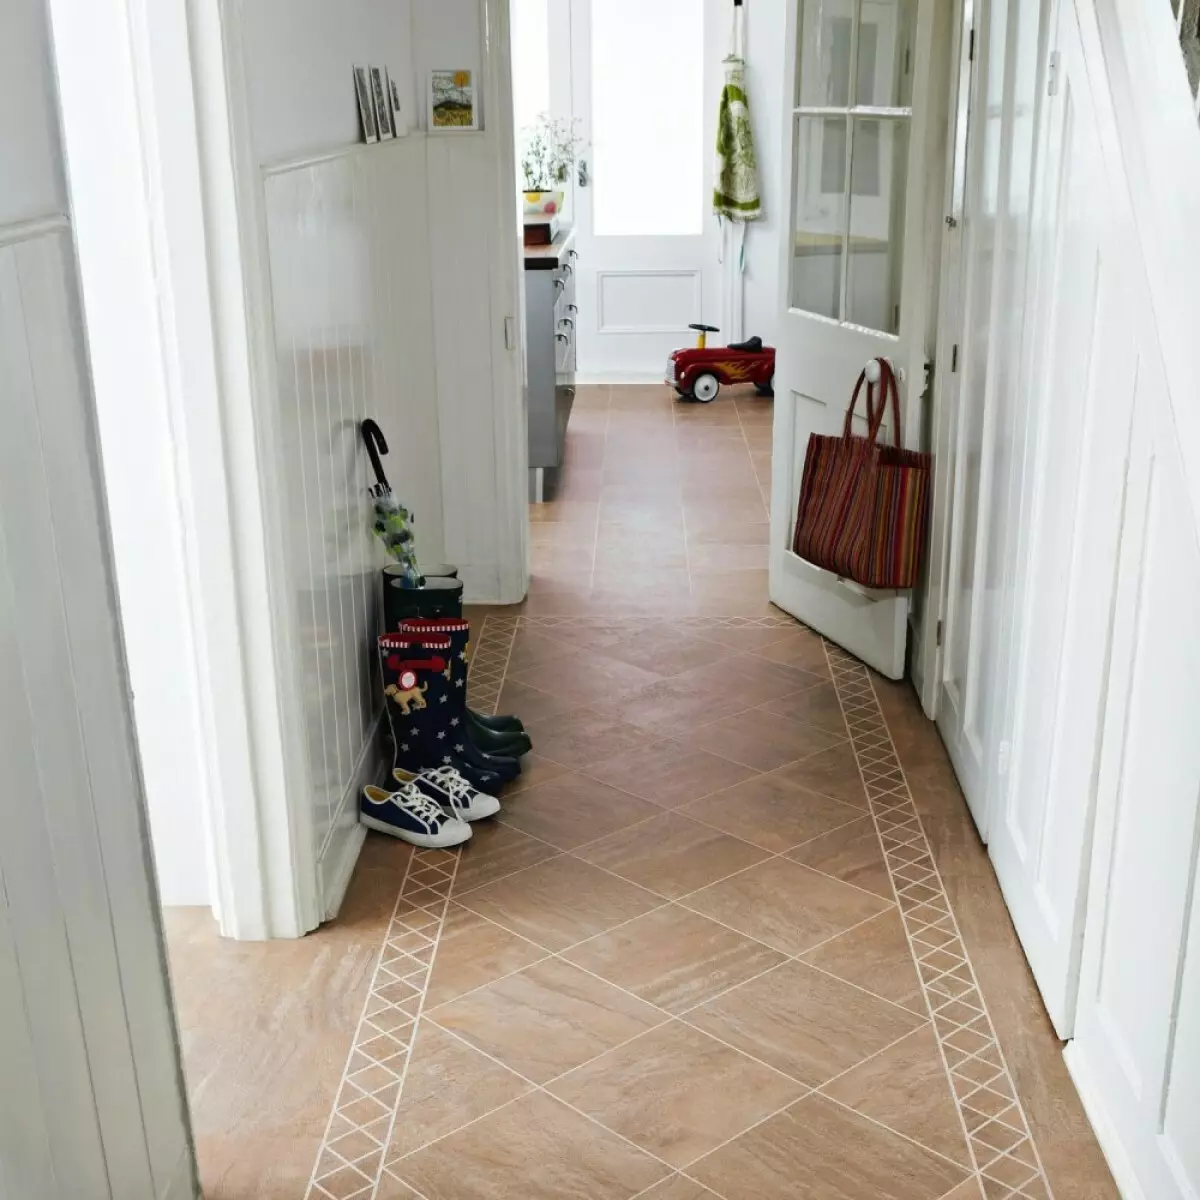 Placi pe podea în coridor (99 fotografii): Opțiuni pentru designul plăcilor de podea în hol. Modele din gresie de porțelan, celule de țiglă și alte opțiuni frumoase 9181_80